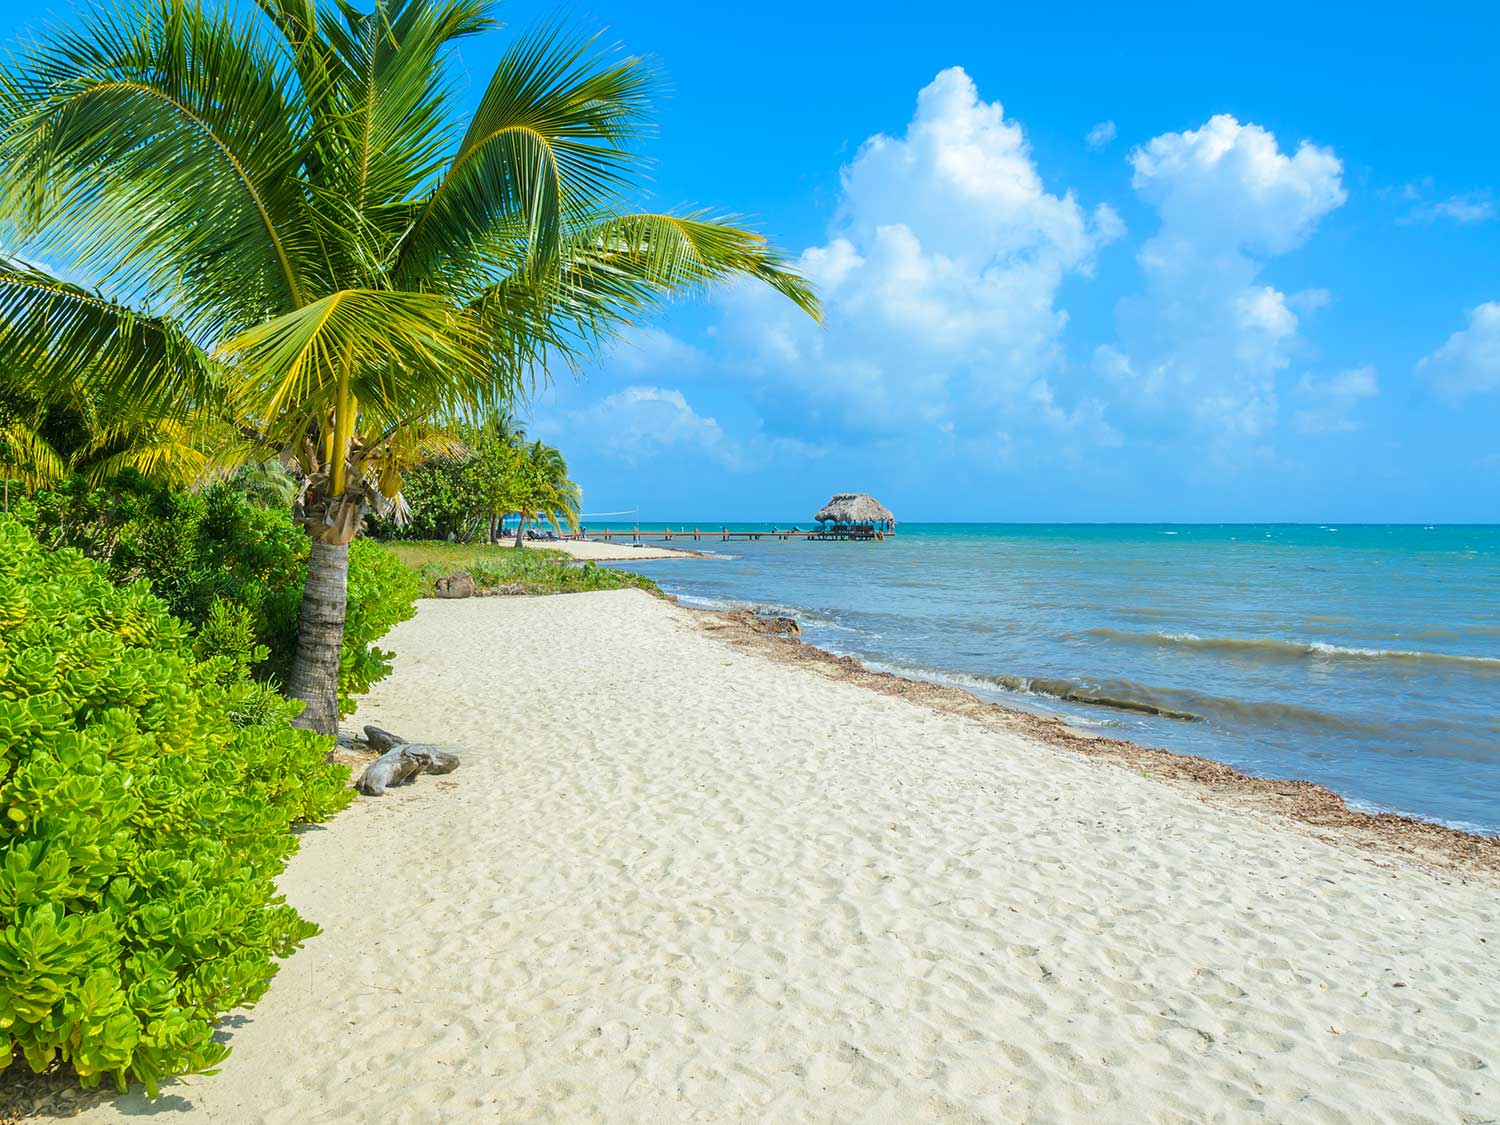 A beautiful beach in Placenia, Belize